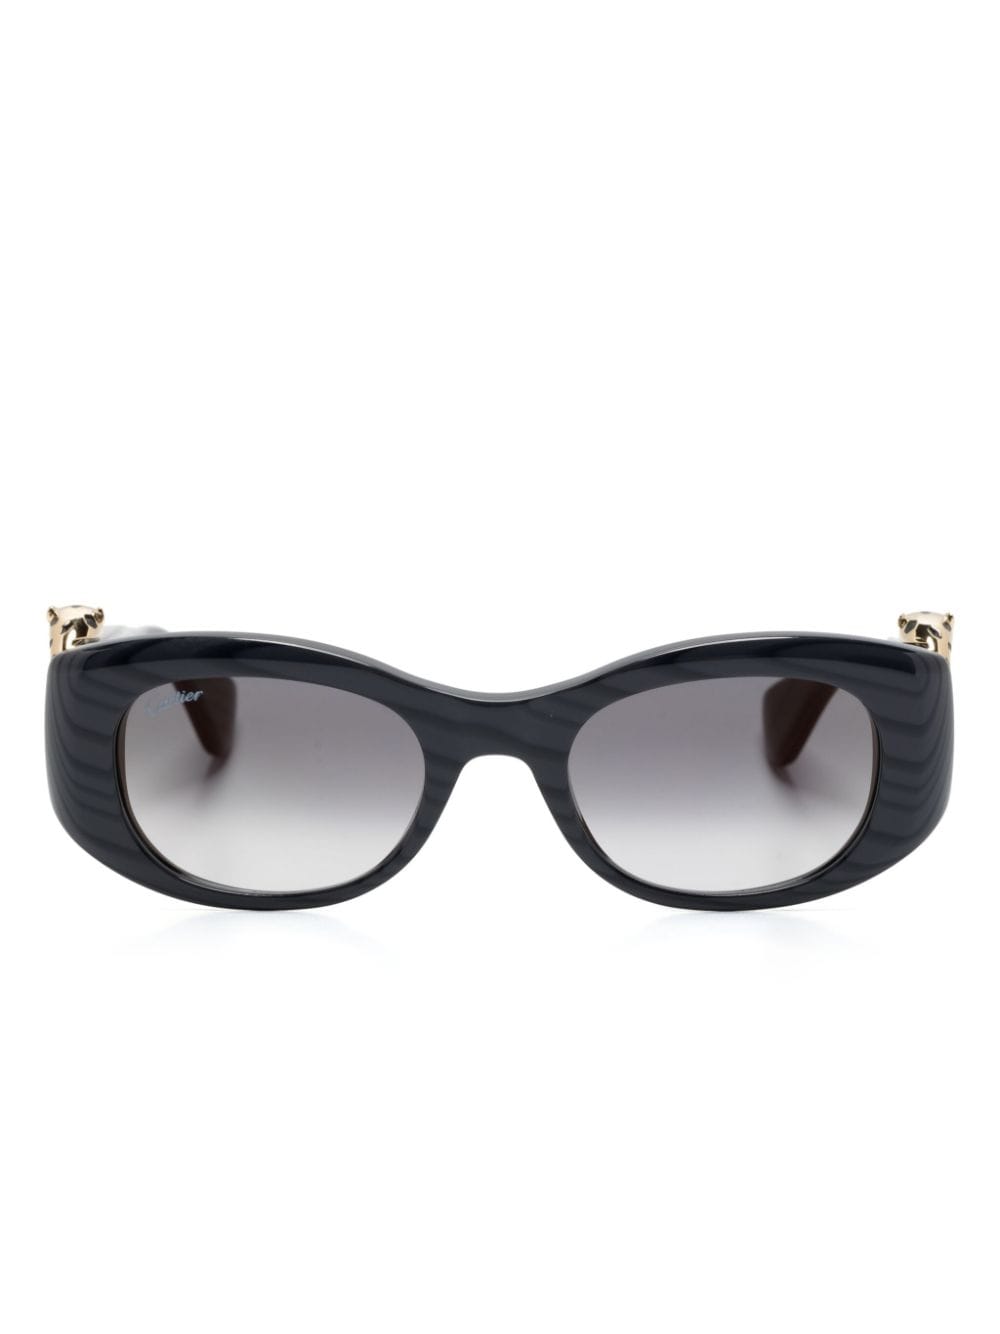 Cartier Eyewear Panthère de Cartier zonnebril met rechthoekig montuur - Grijs